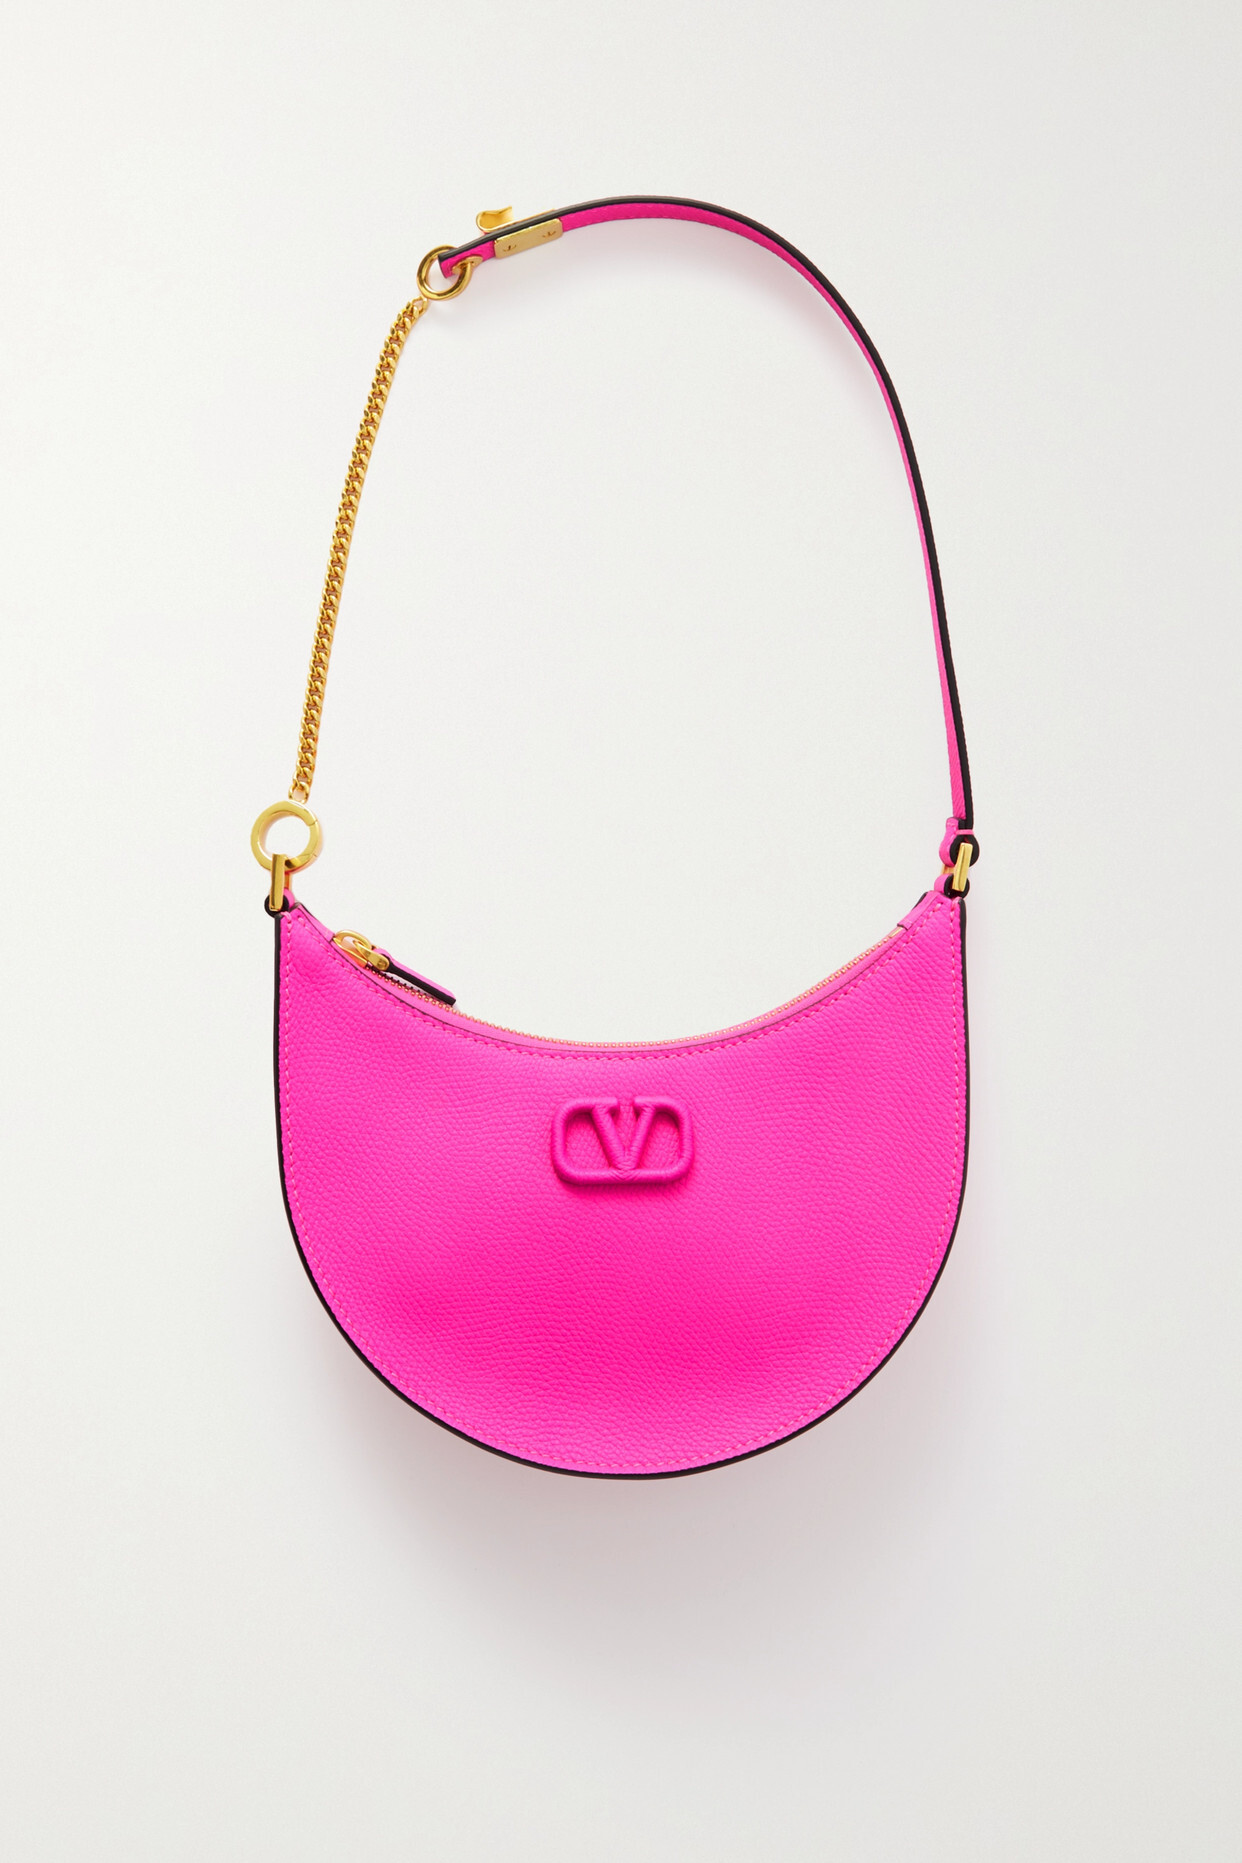 Valentino - Valentino Garavani Vlogo Mini Textured-leather Shoulder Bag - Pink